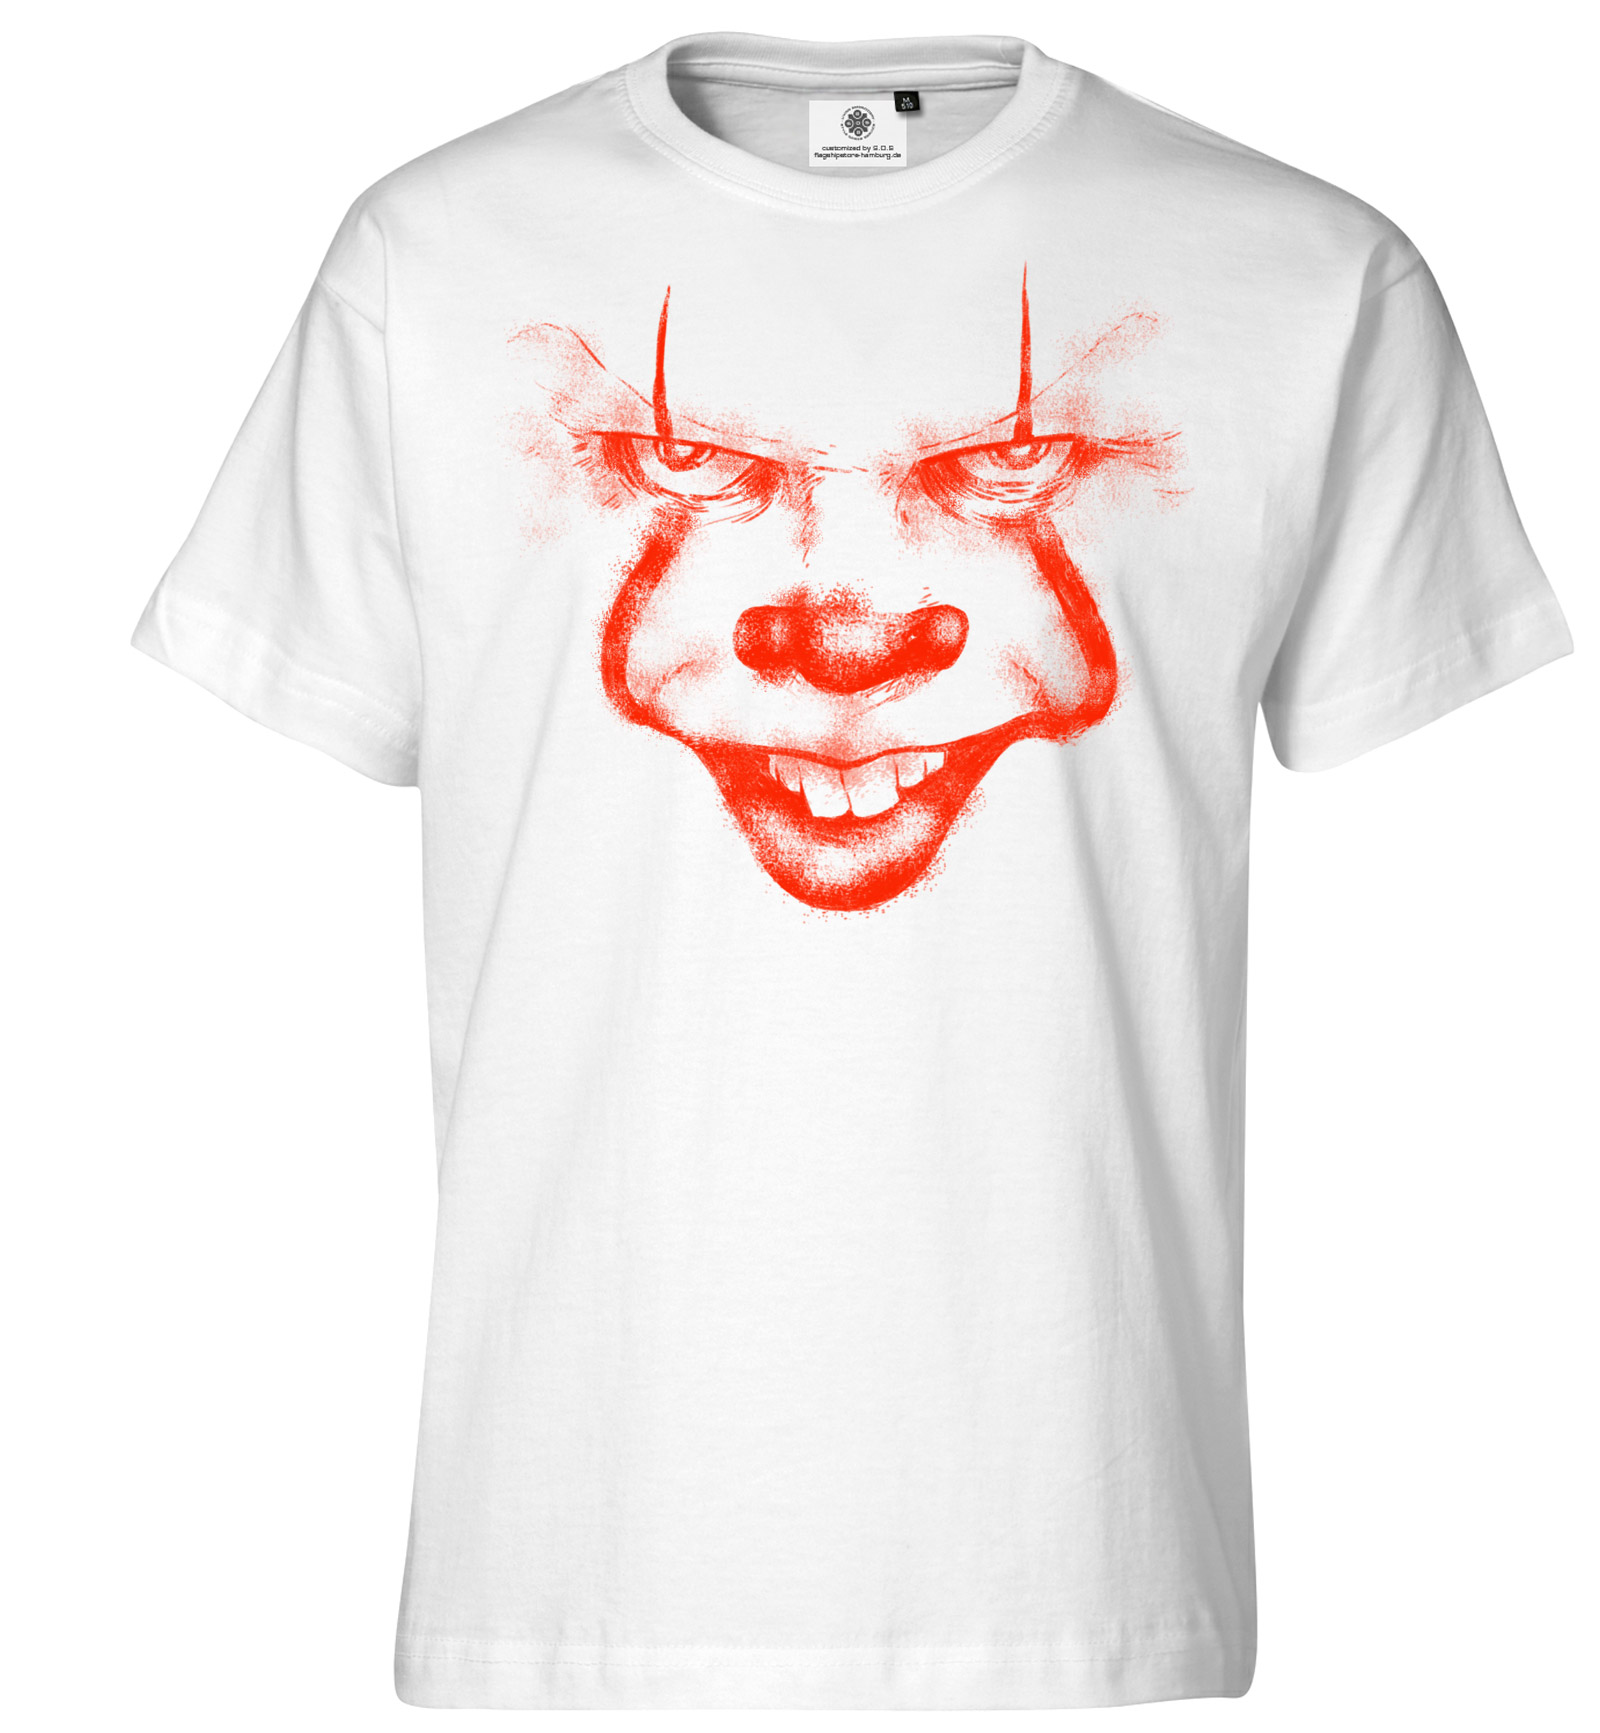 Herren Unisex T-Shirt Sensenmann-Booh Horror spook Spuk Funshirt Fasching 